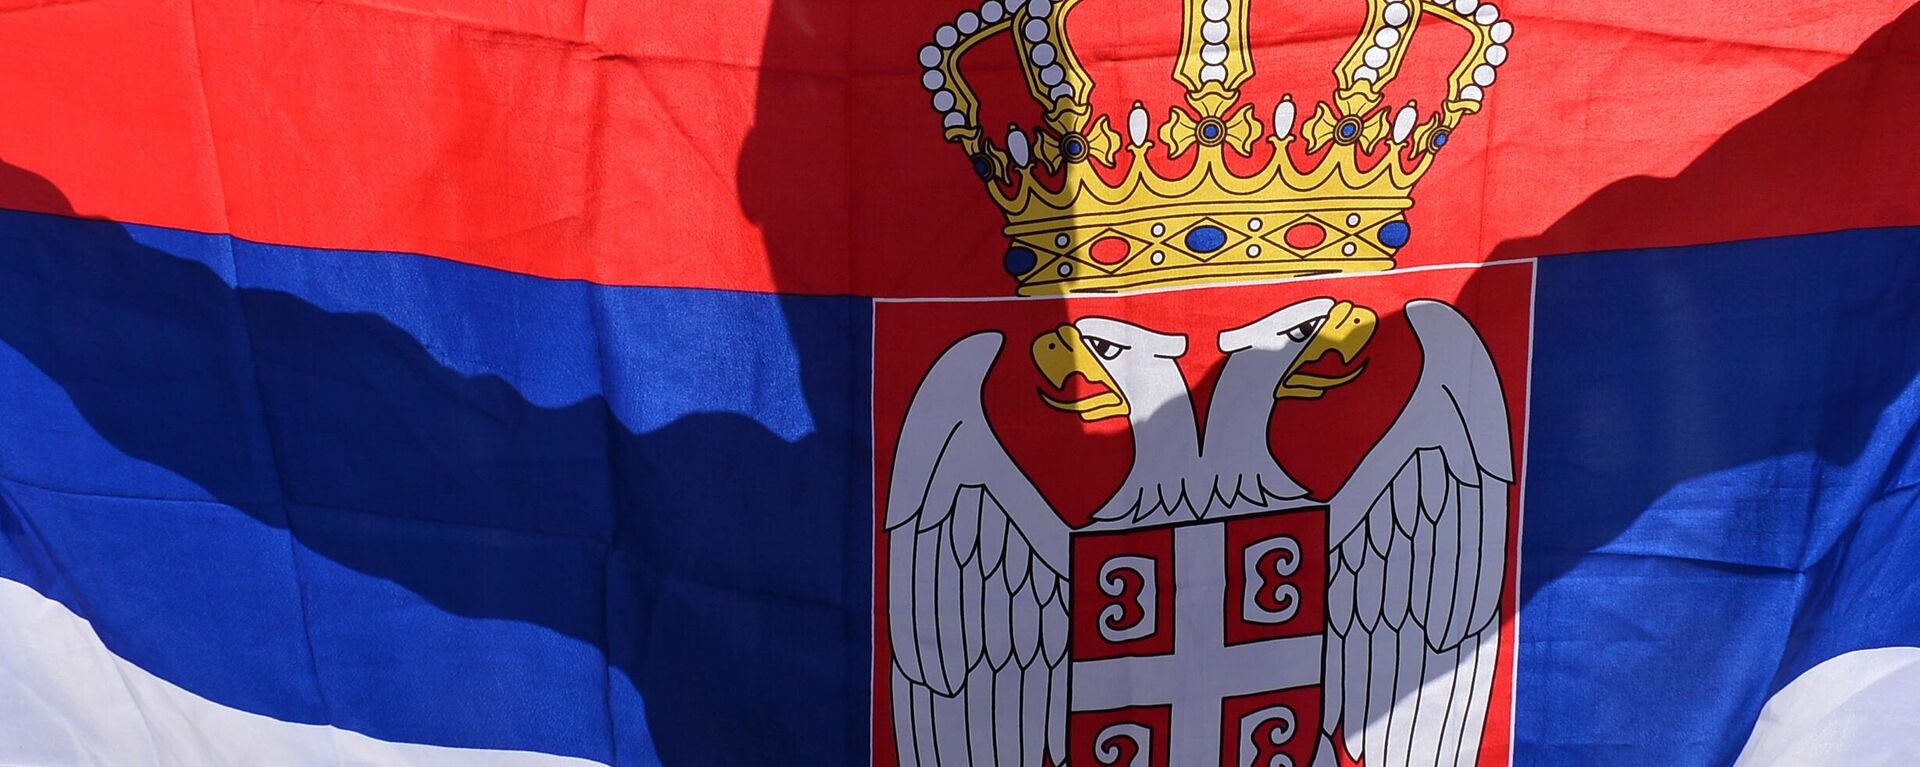 Zastava Srbije - Sputnik Srbija, 1920, 23.07.2021